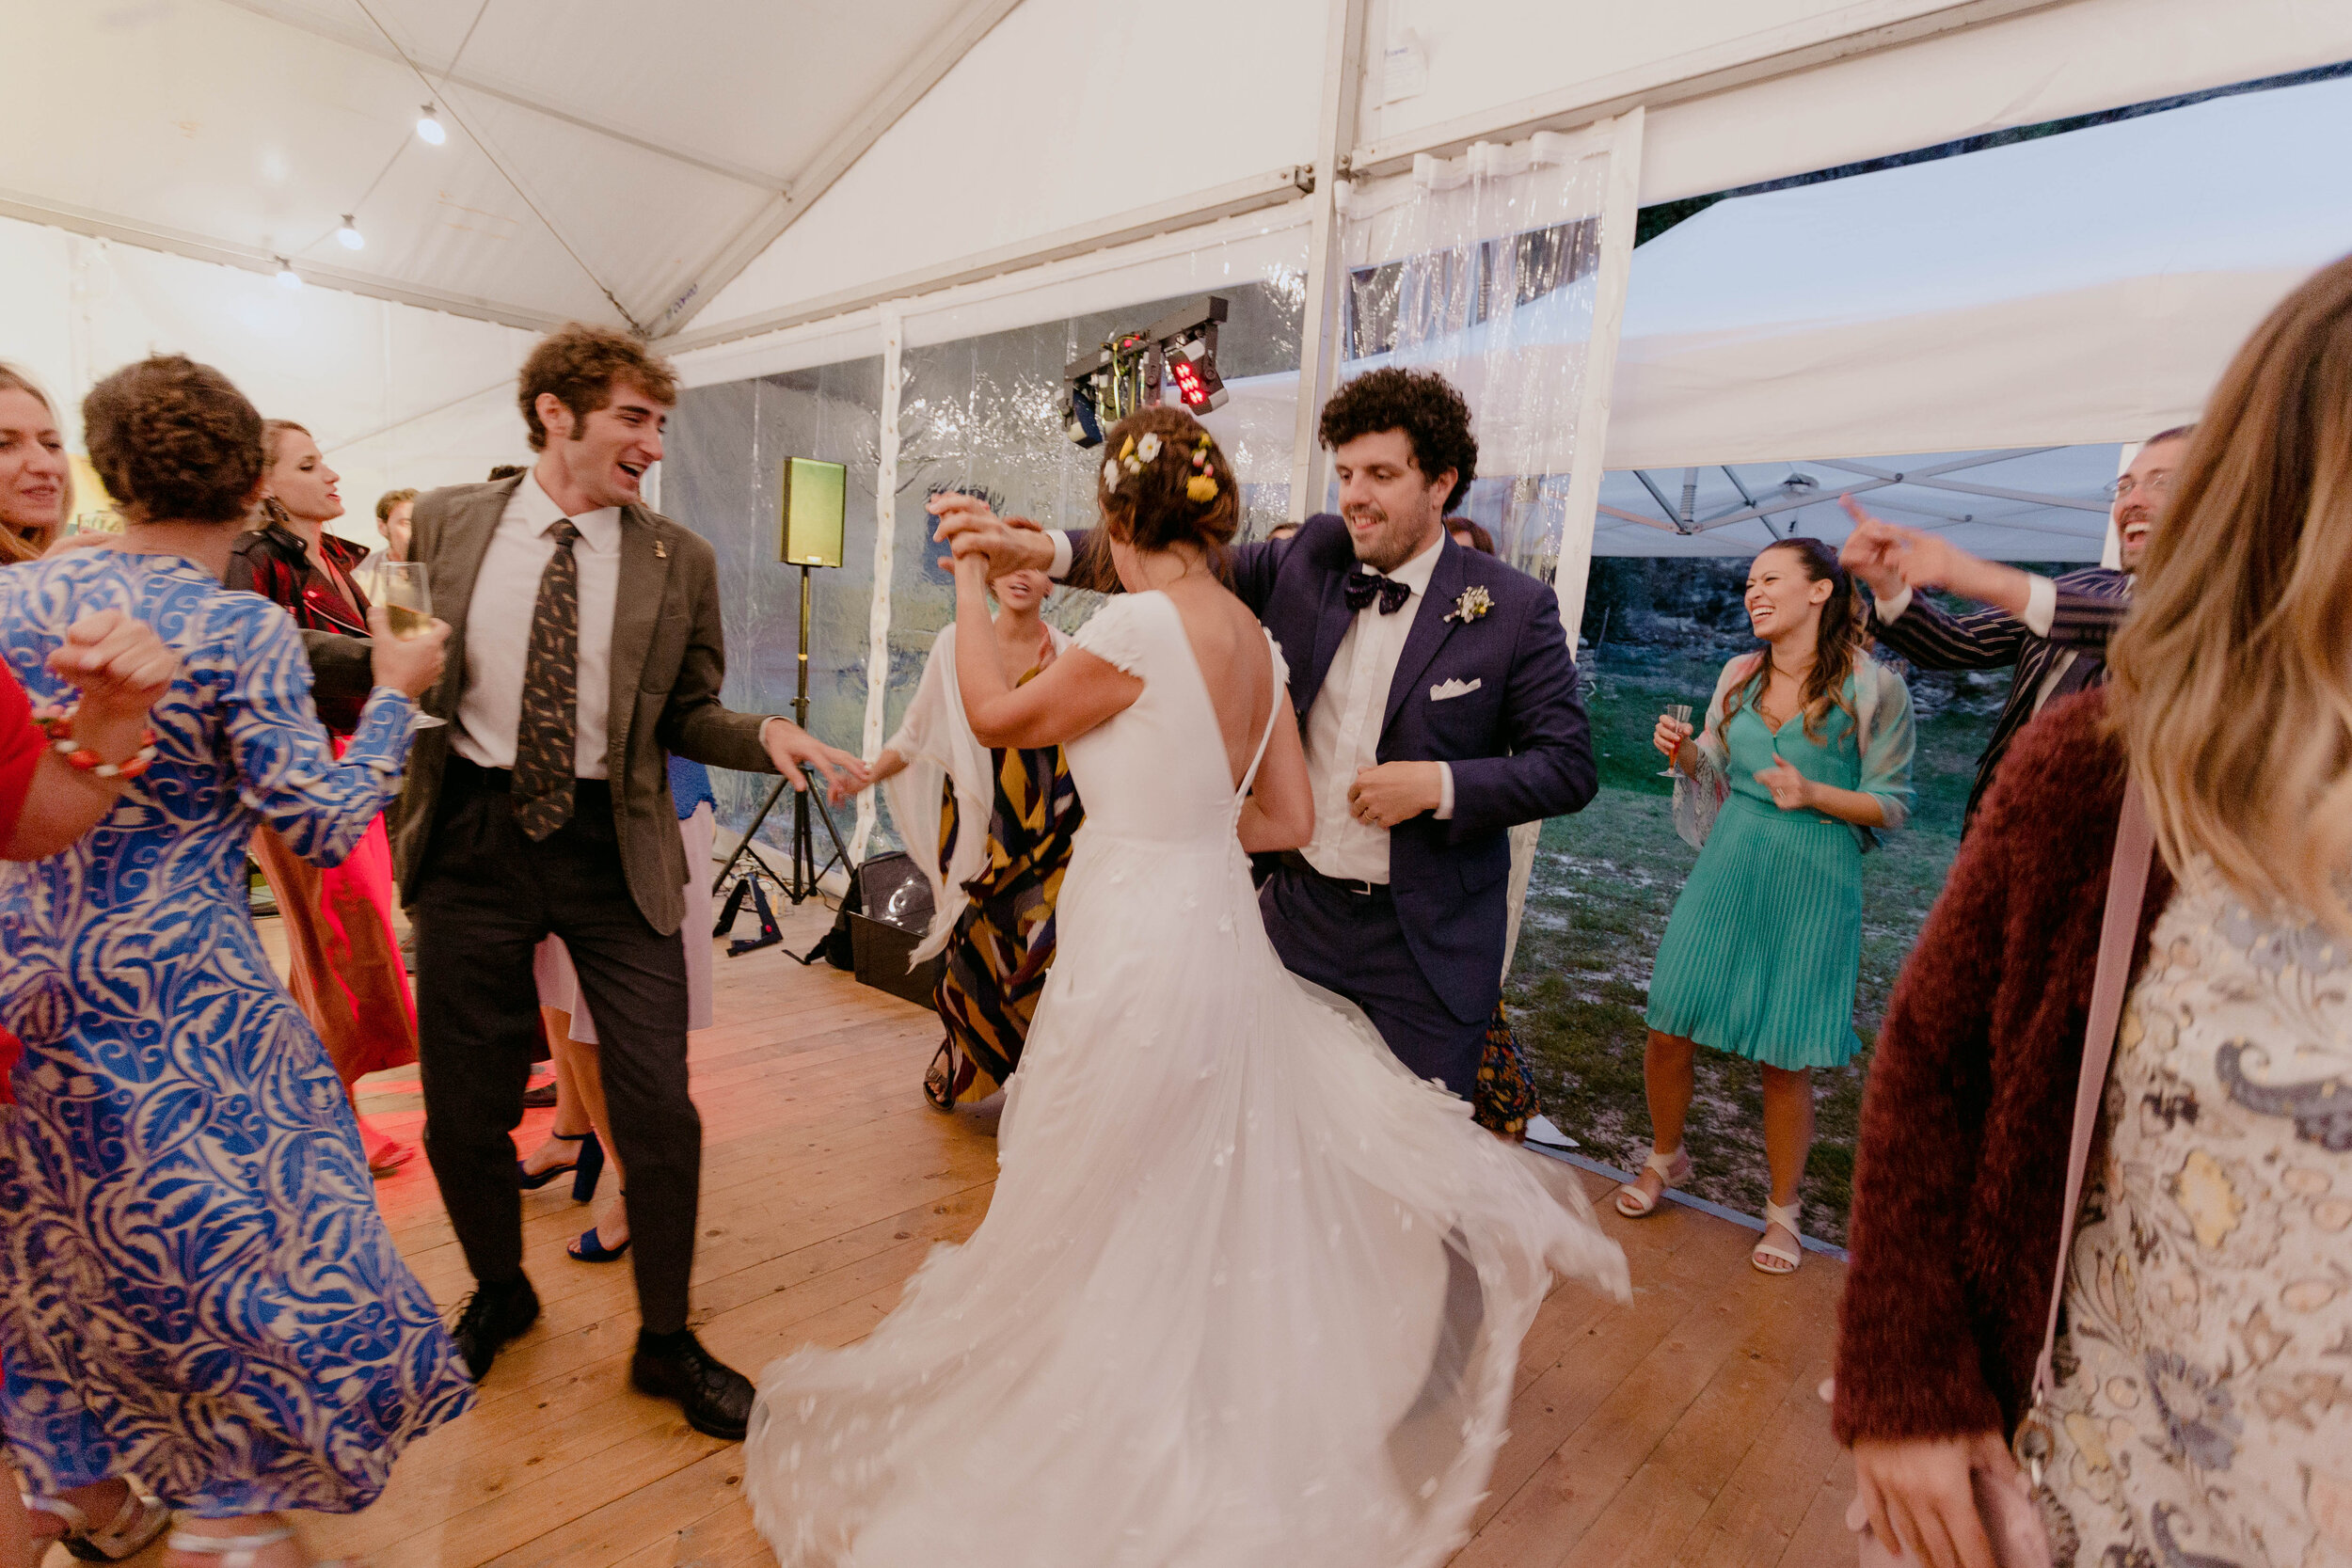 075 - Matrimonio in Val di Susa - Miriam Callegari Fotografa.JPG